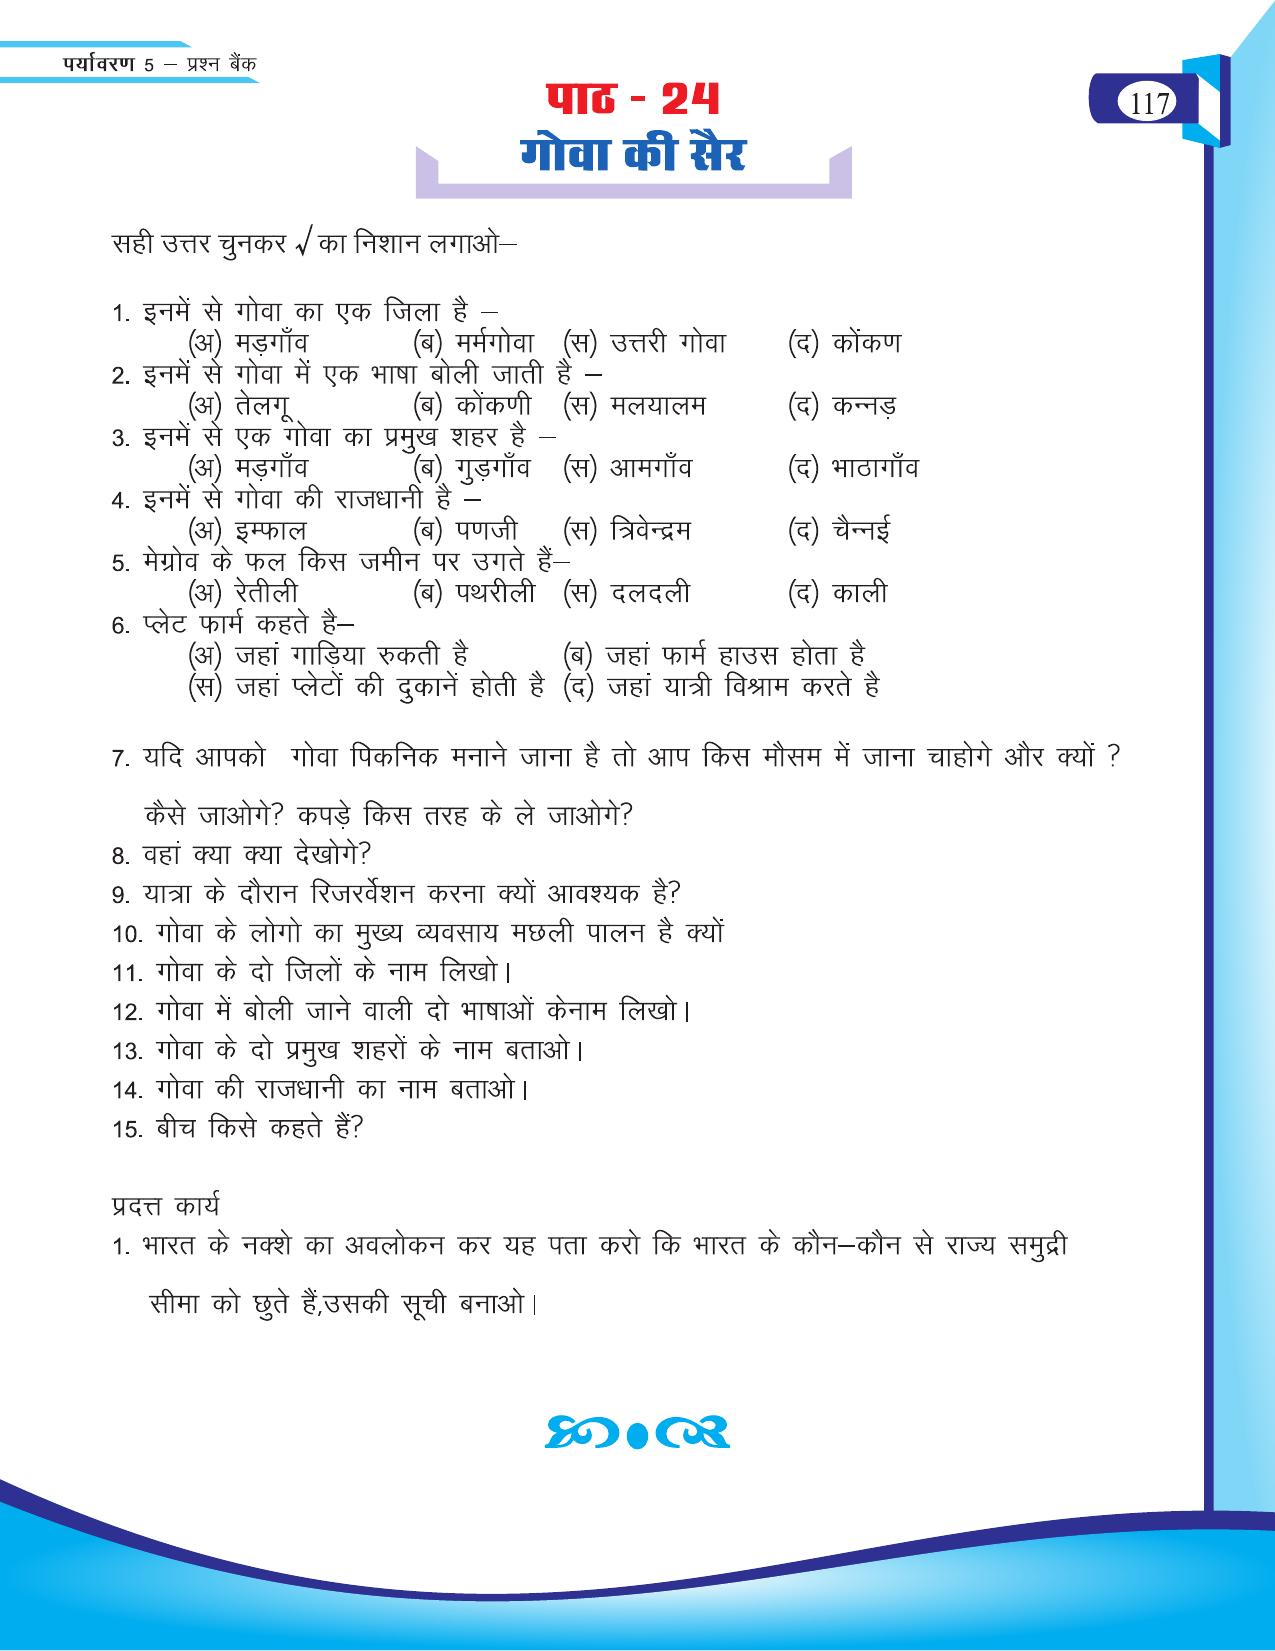 Chhattisgarh Board Class 5 EVS Question Bank 2015-16 - Page 43